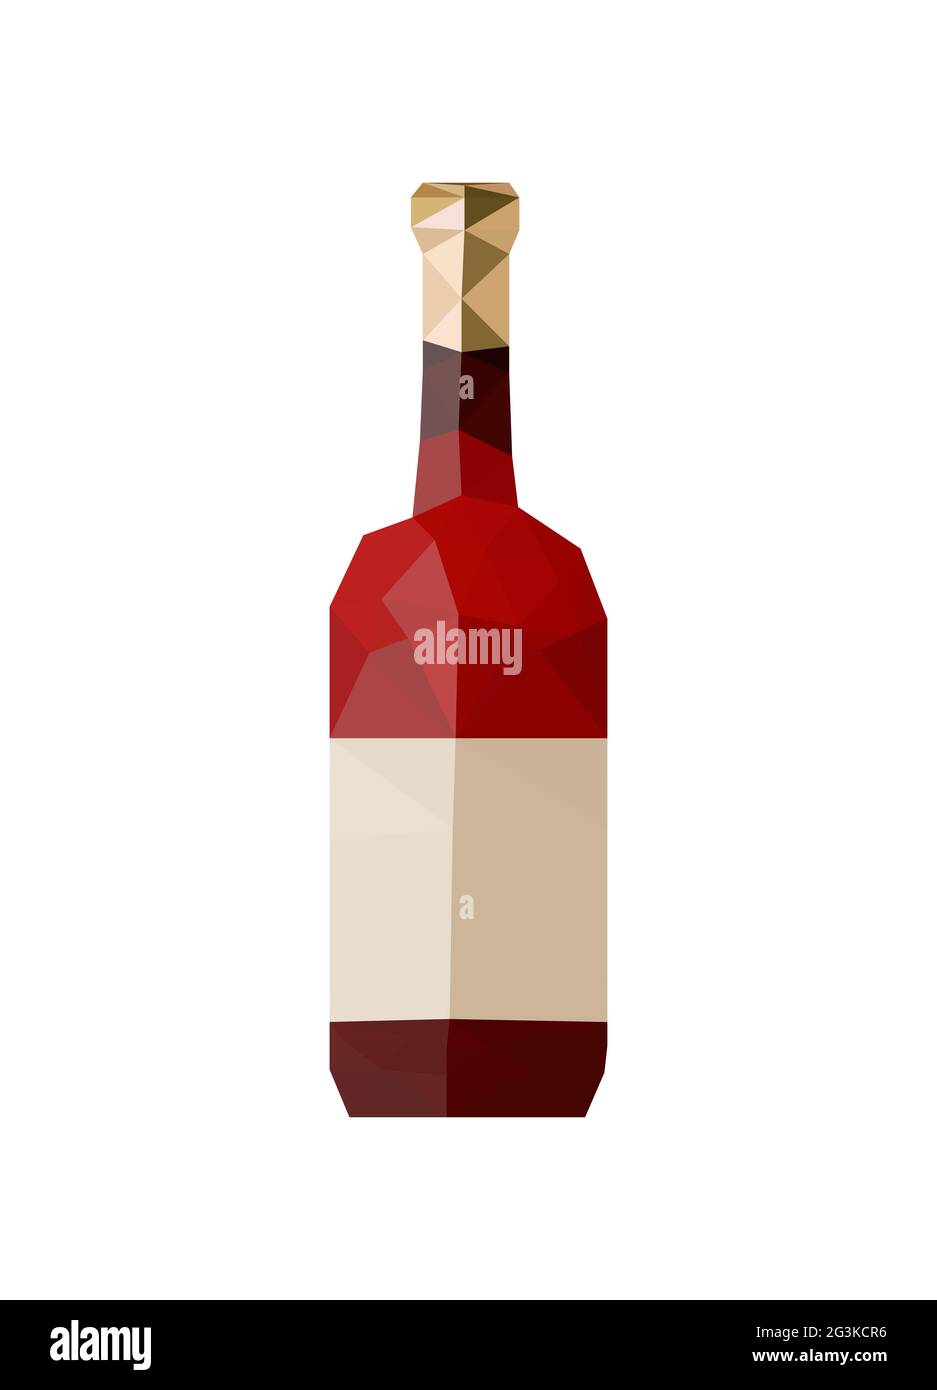 Illustration d'une bouteille de vin d'origami Photo Stock - Alamy